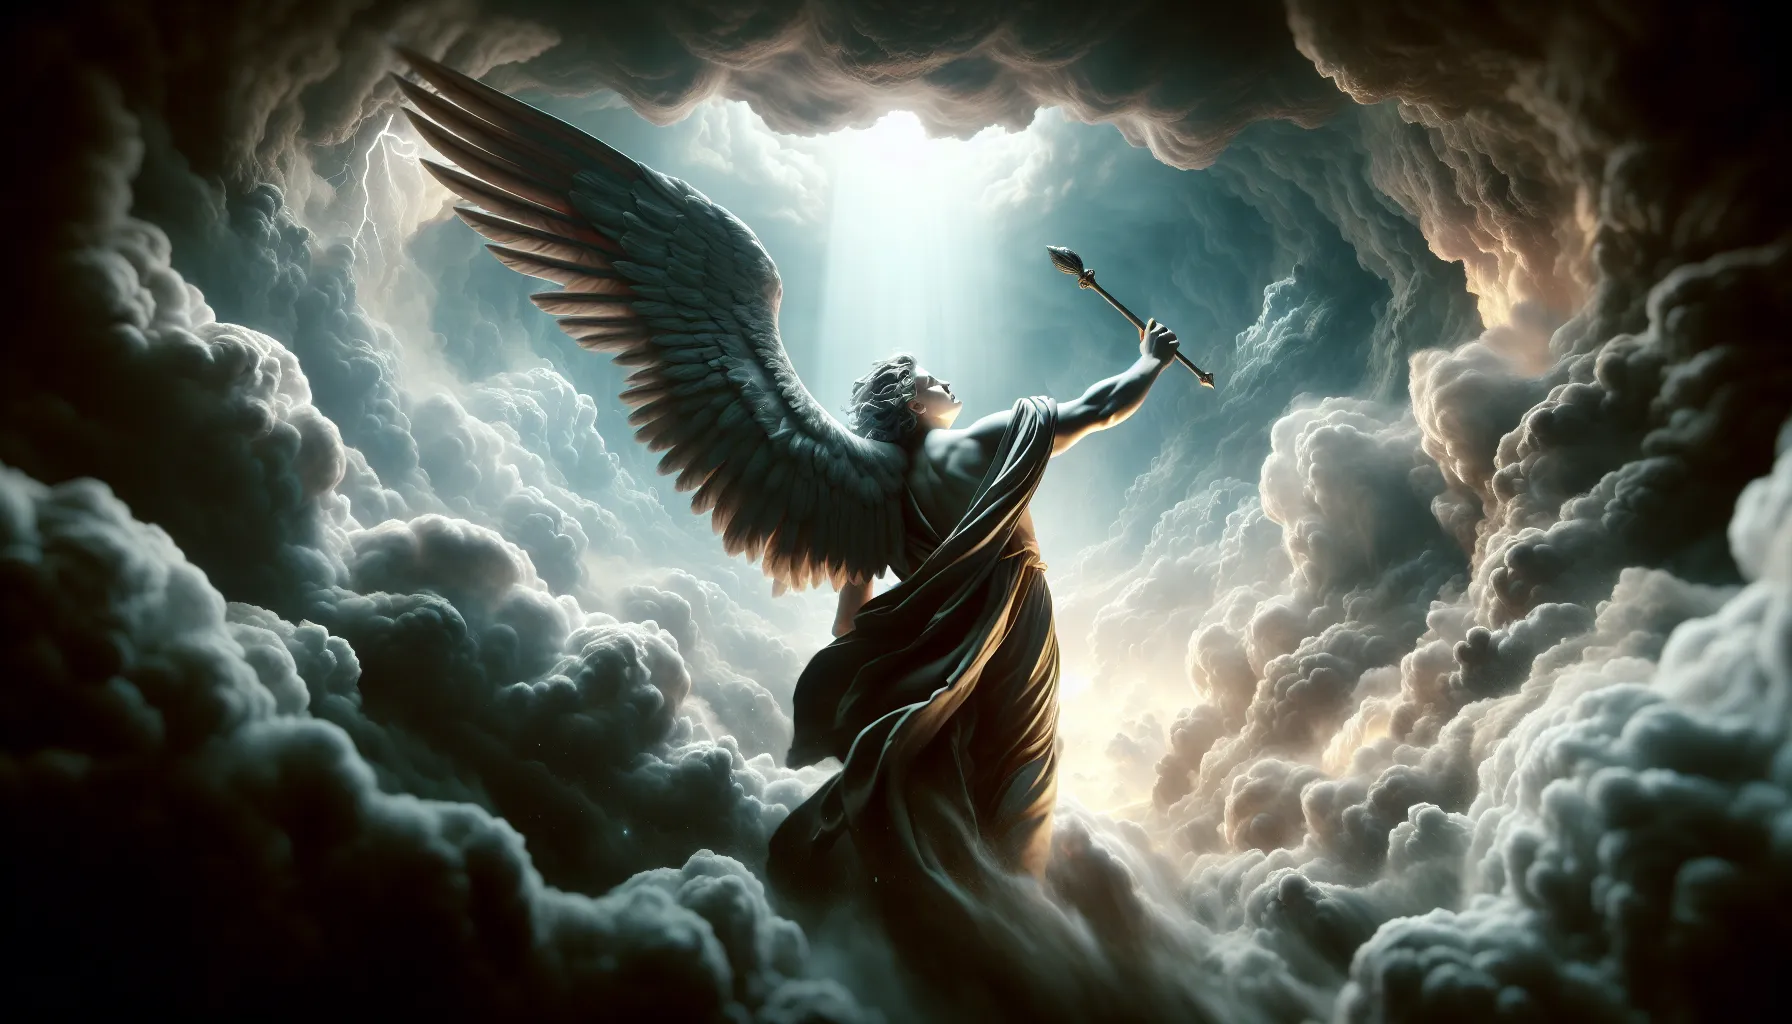 Representación visual del ángel caído Lucifer siendo expulsado del cielo según la Biblia.